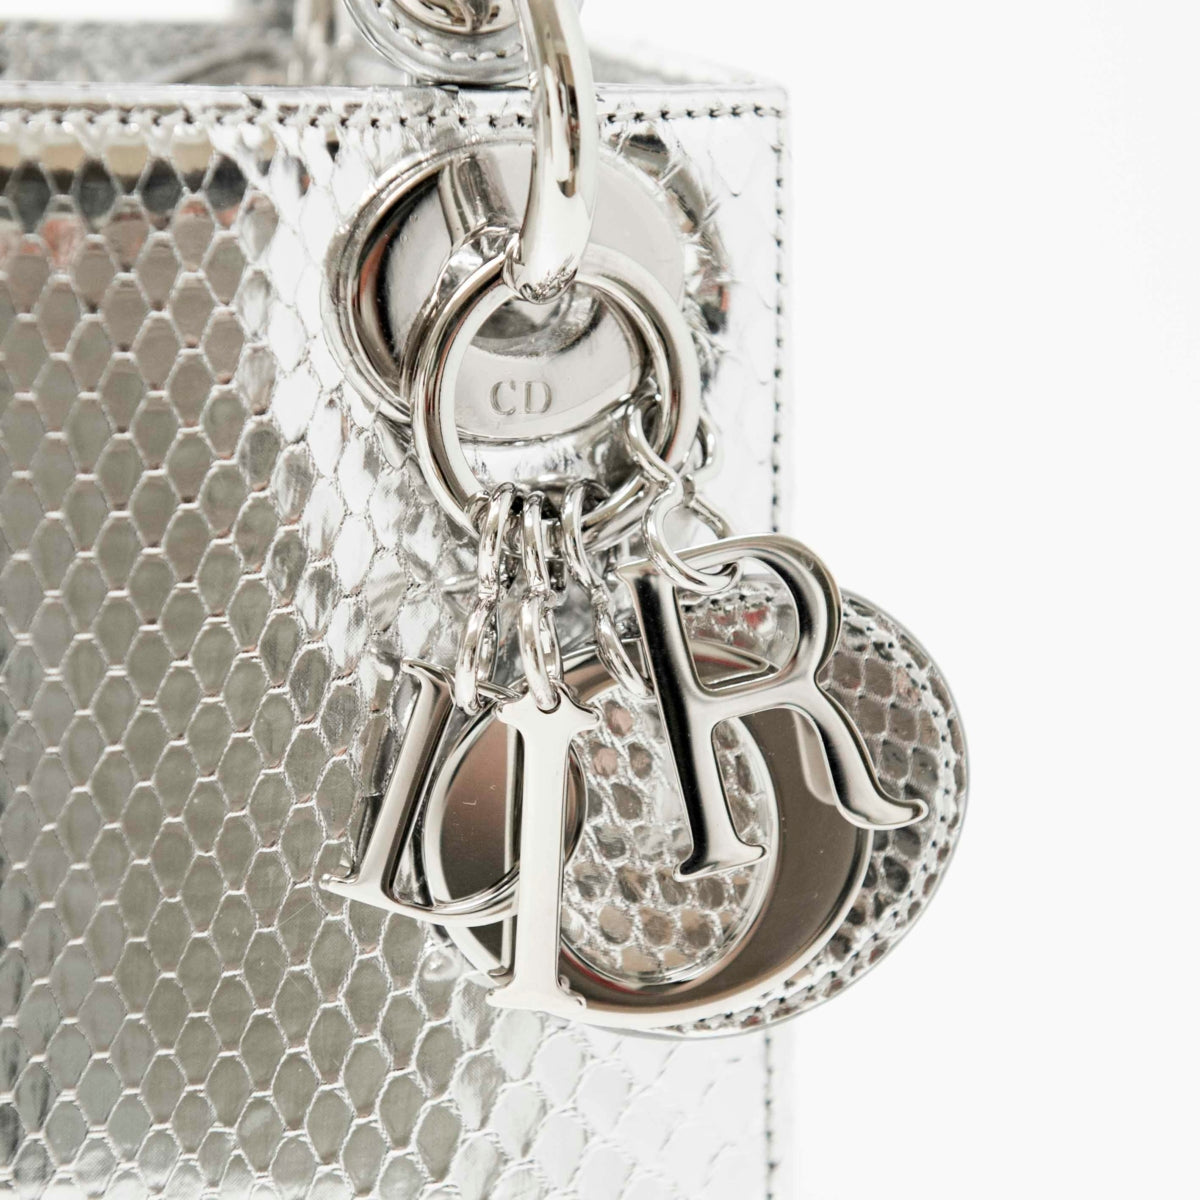 Dior Silver Python Mini Lady Dior Bag